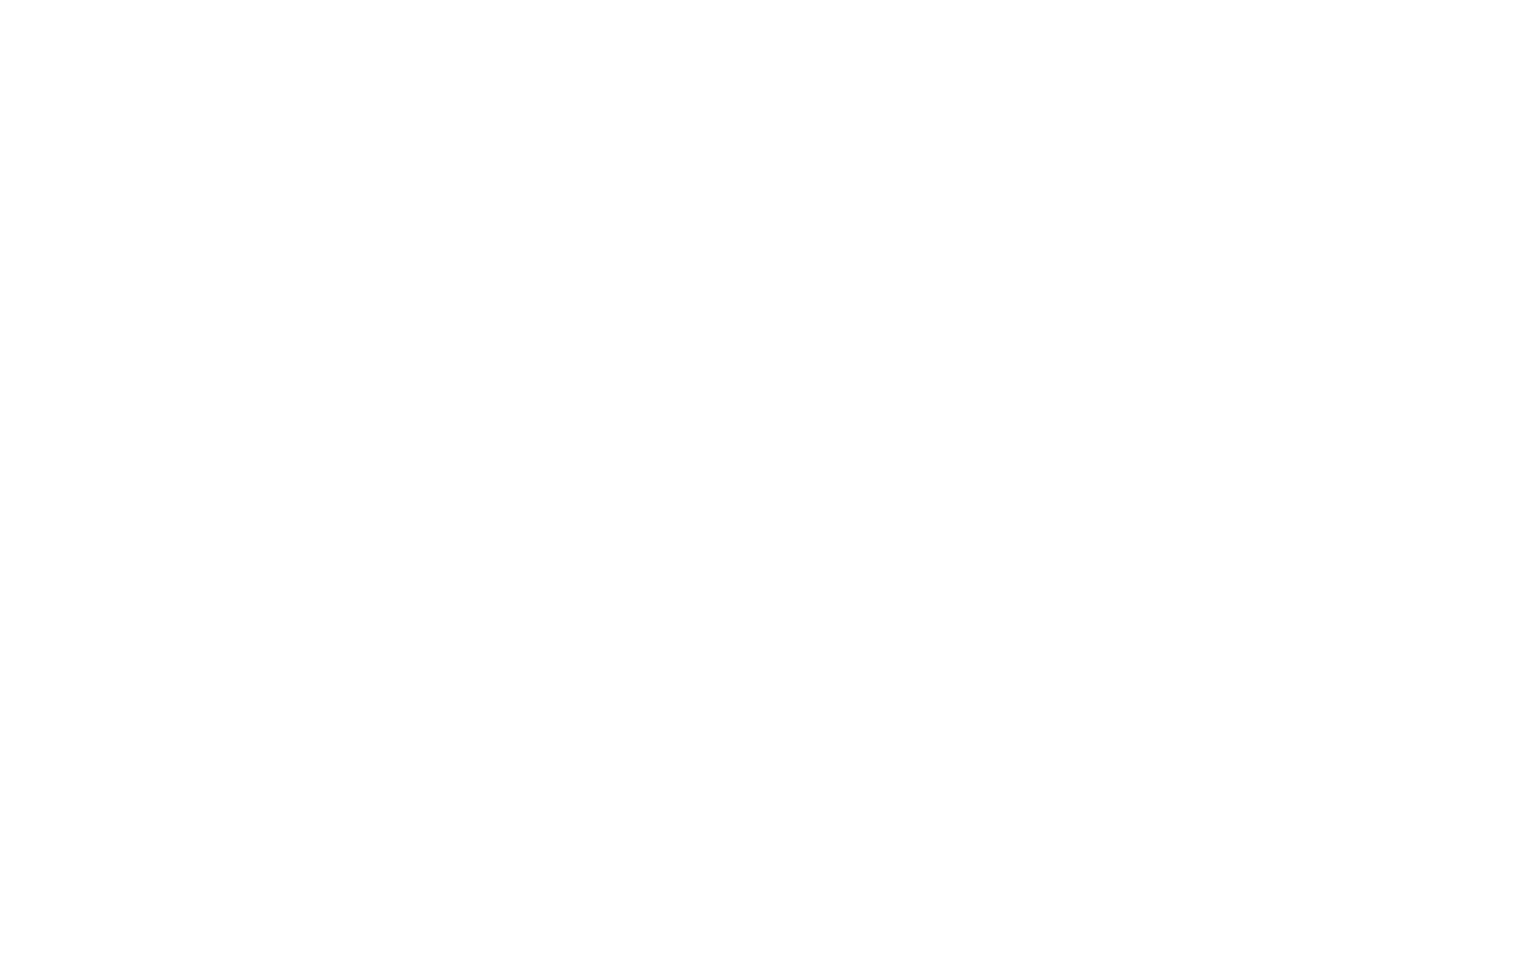 Mama's Soup